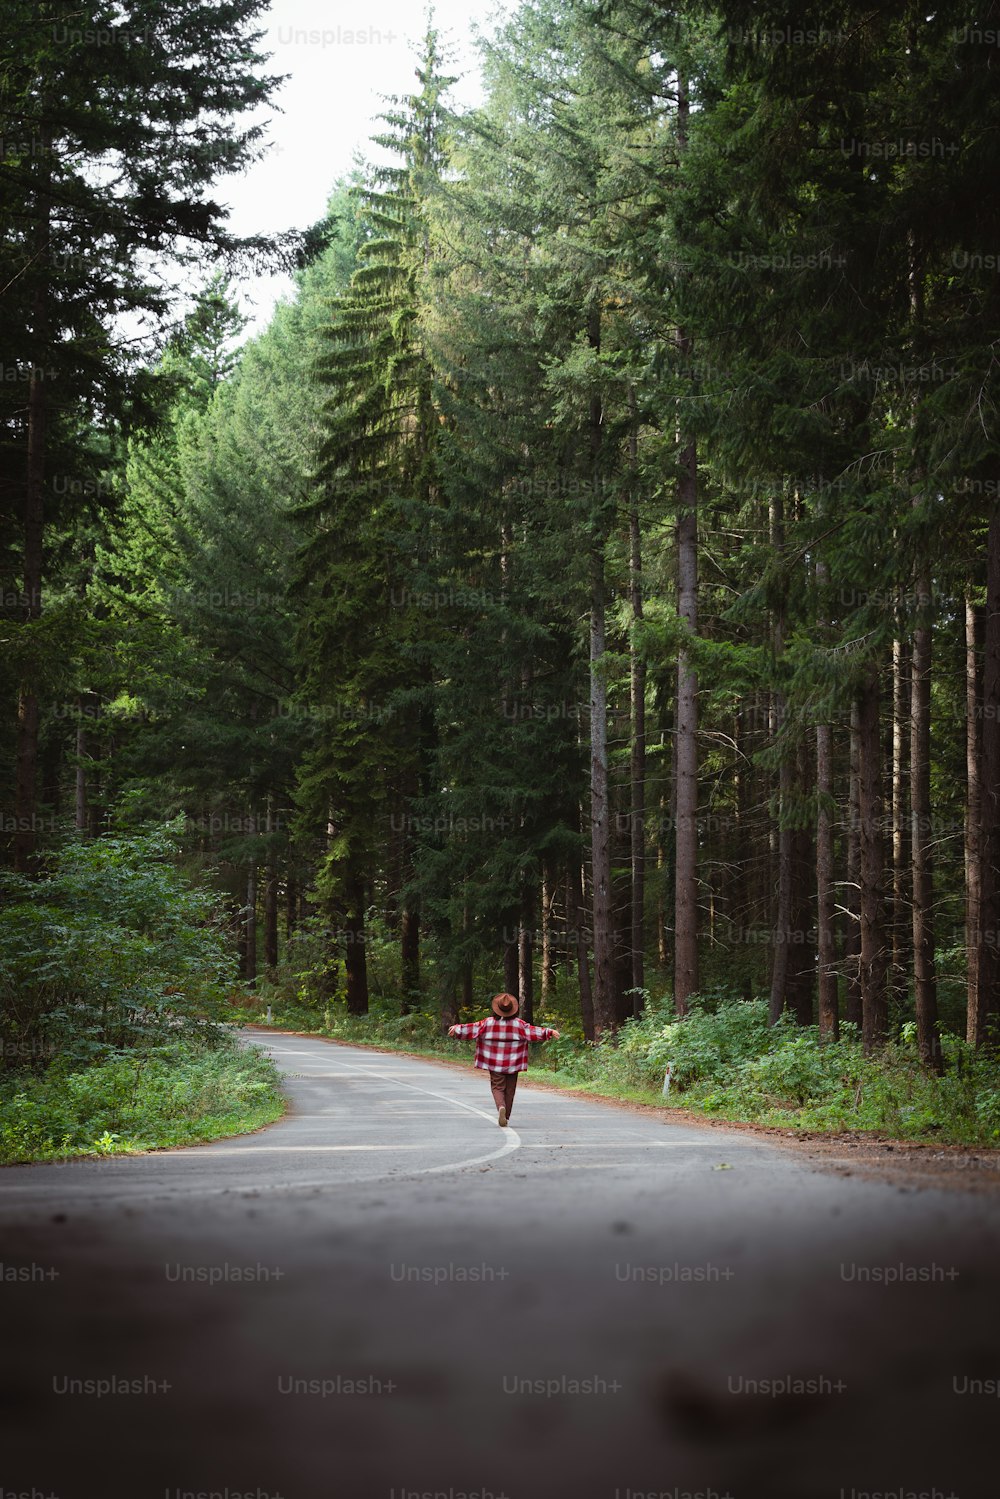 une personne marchant sur une route au milieu d’une forêt